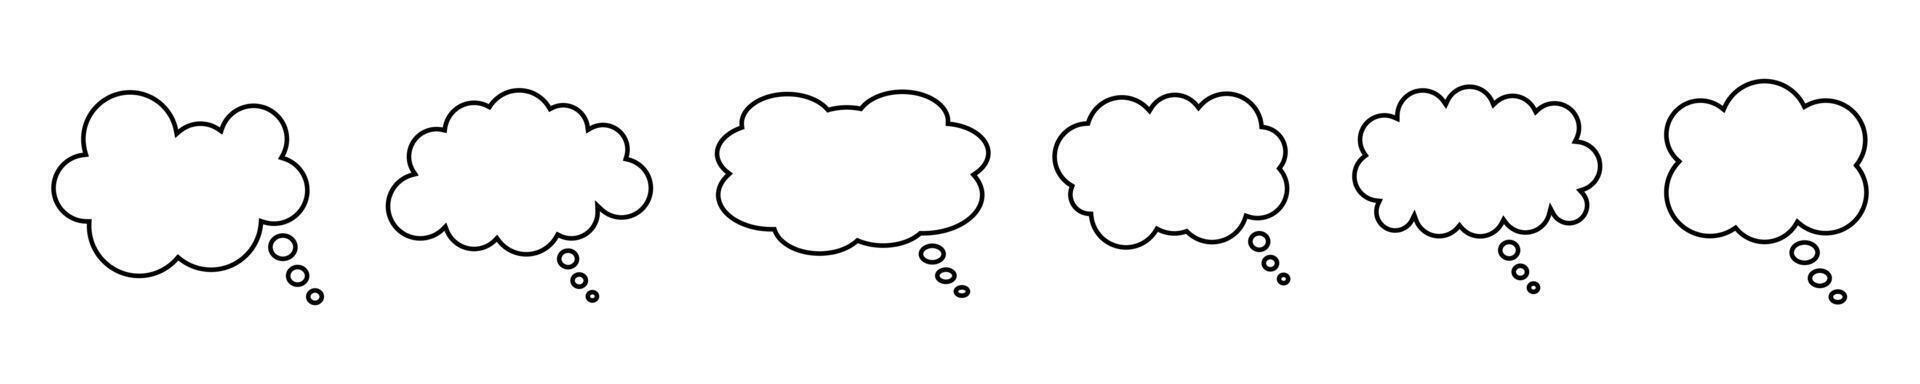 habe gedacht Blase Linie Symbol. Rede oder denken Blase, leeren Kommunikation Wolke. einstellen von Vektor Design Elemente. erweitert Schlaganfall.